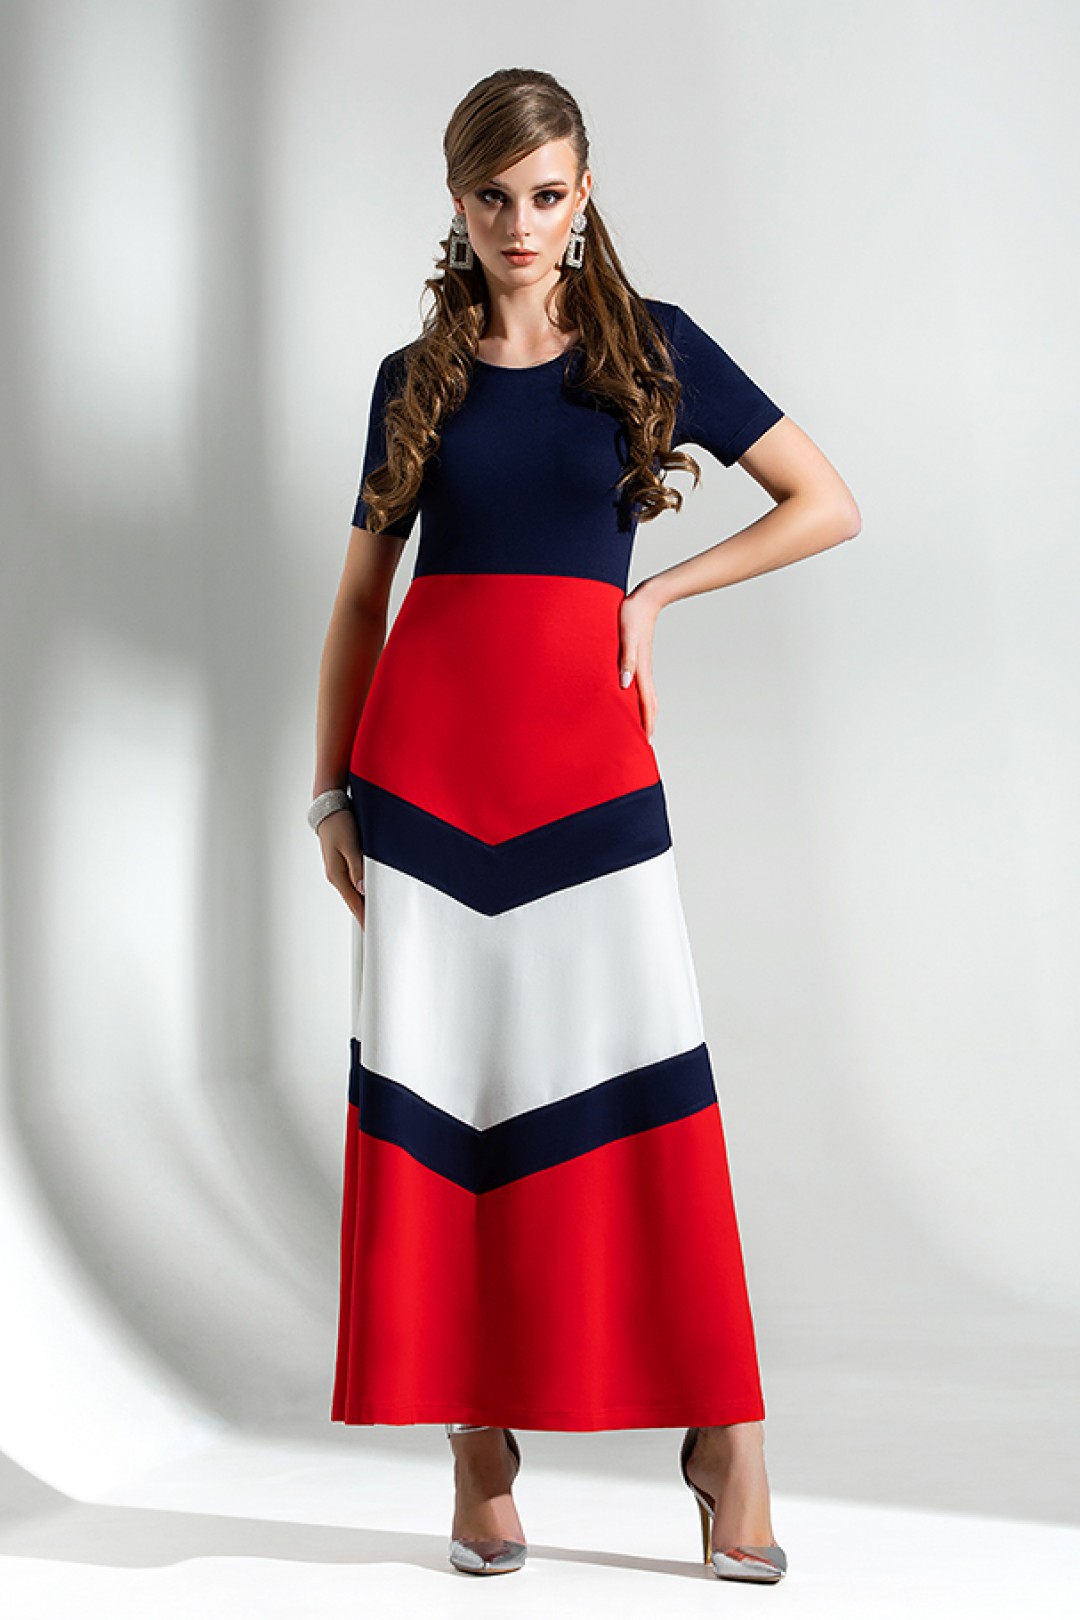 Платье Дива 1283 синий-красный-белый